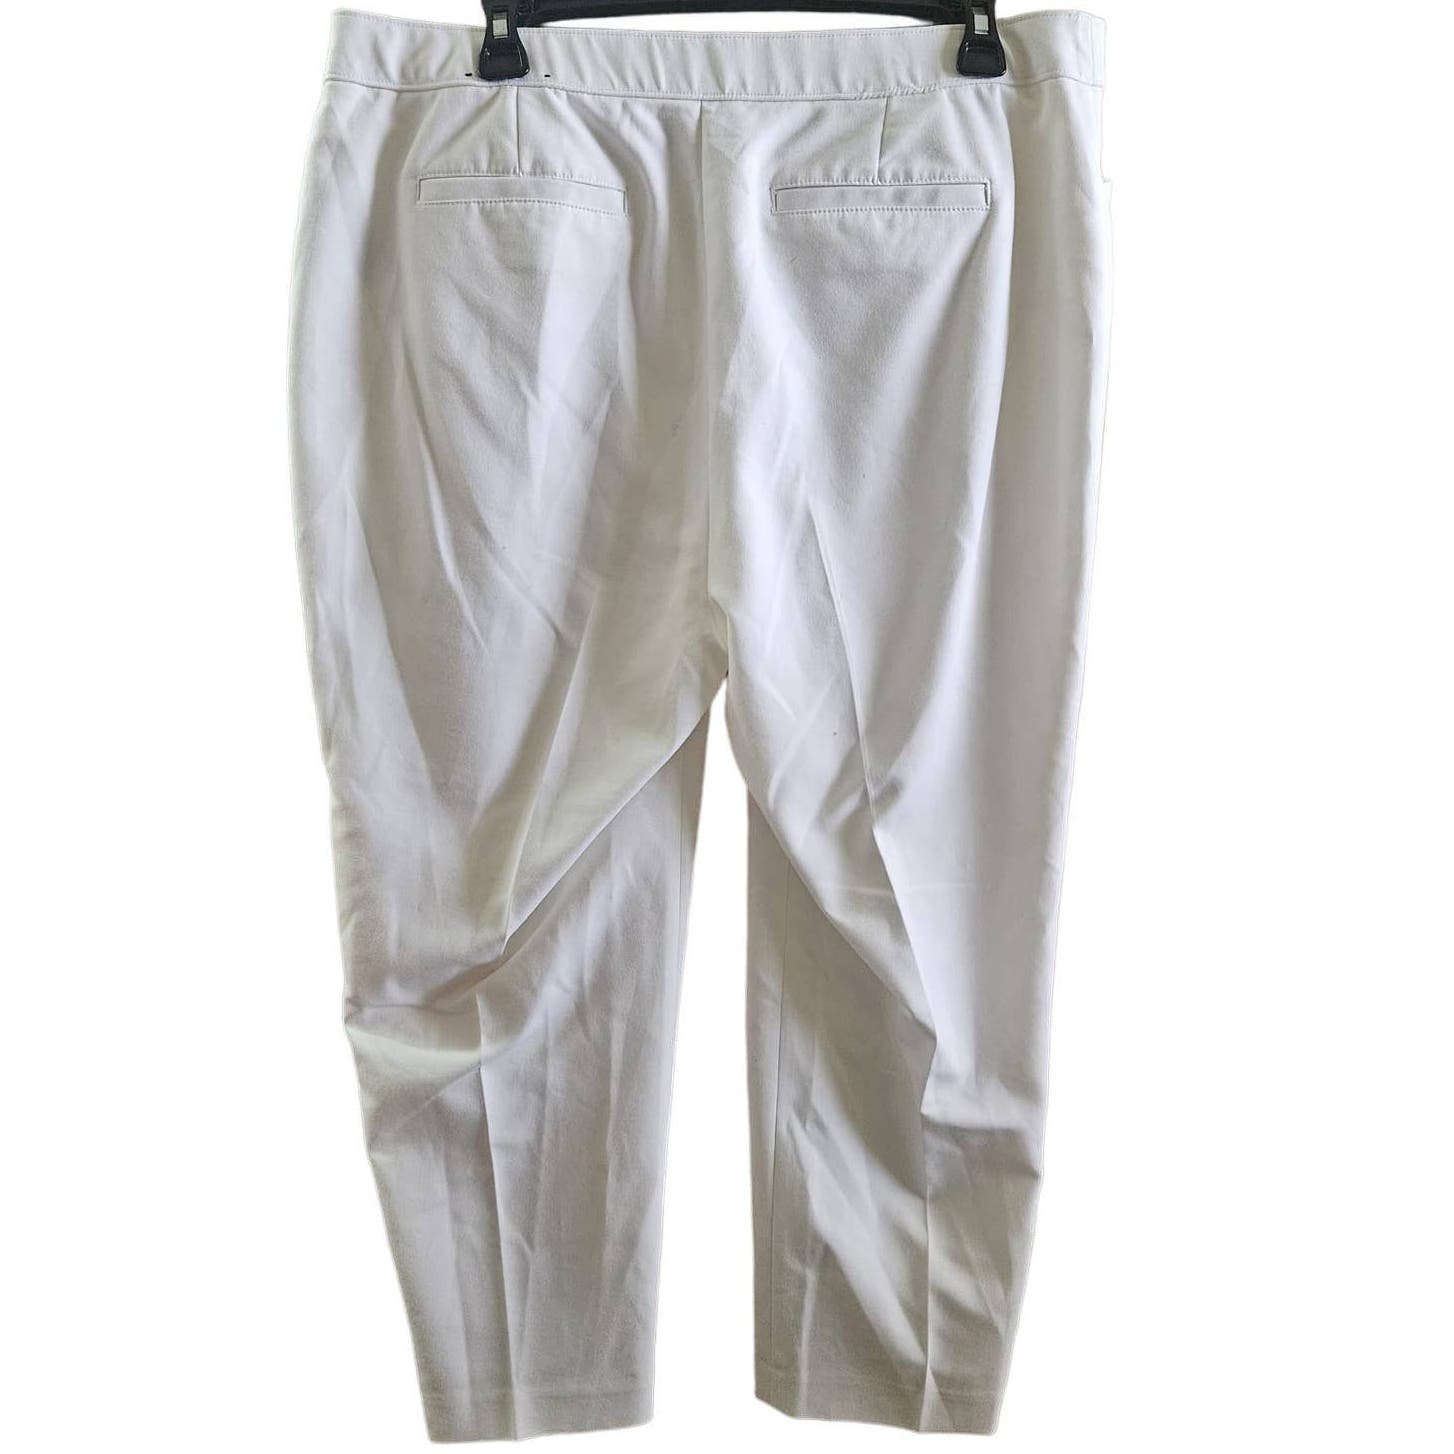 Discounted White Cropped Dress Pants Size 14 iZdqQtoKM Cheap